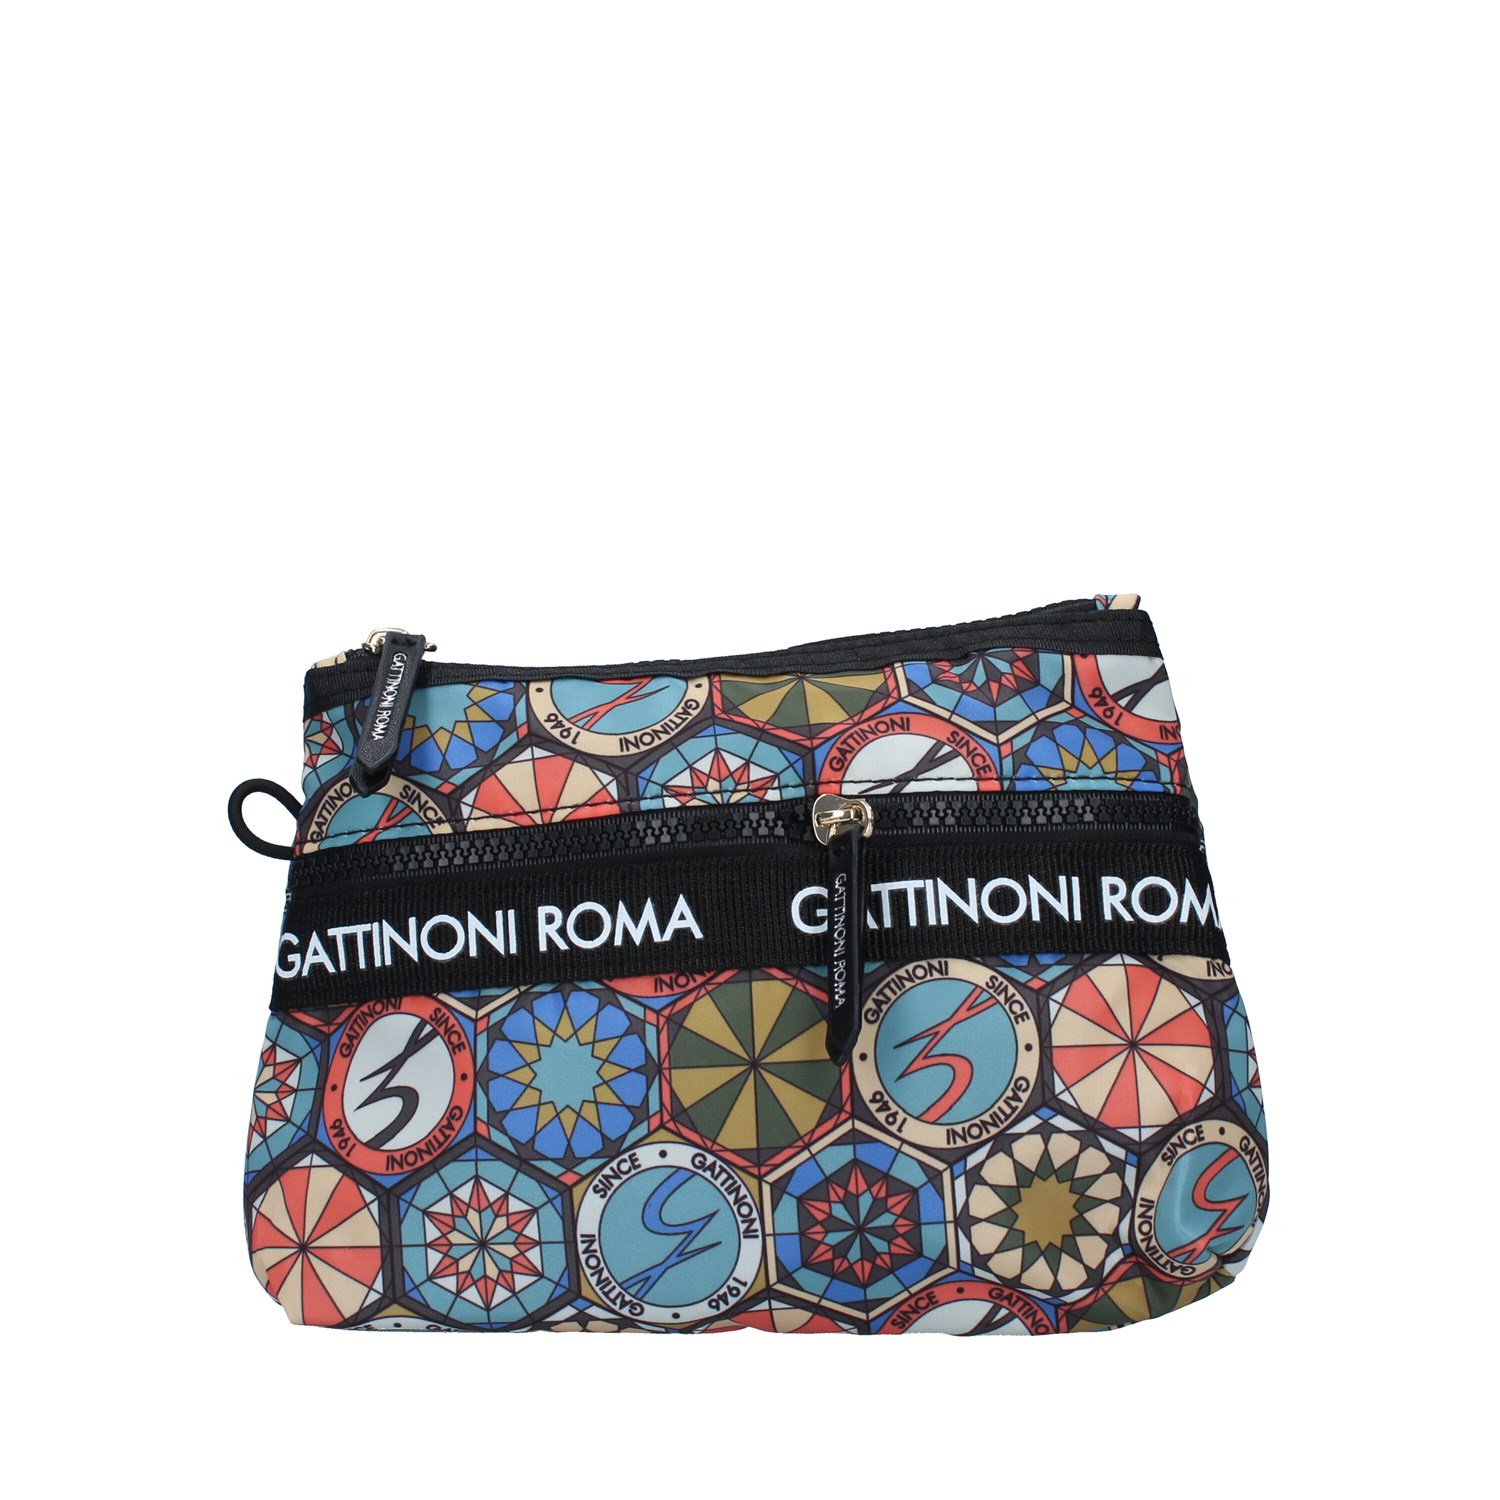 Gattinoni Roma BENTF7689WI BLACK Bags Accessories